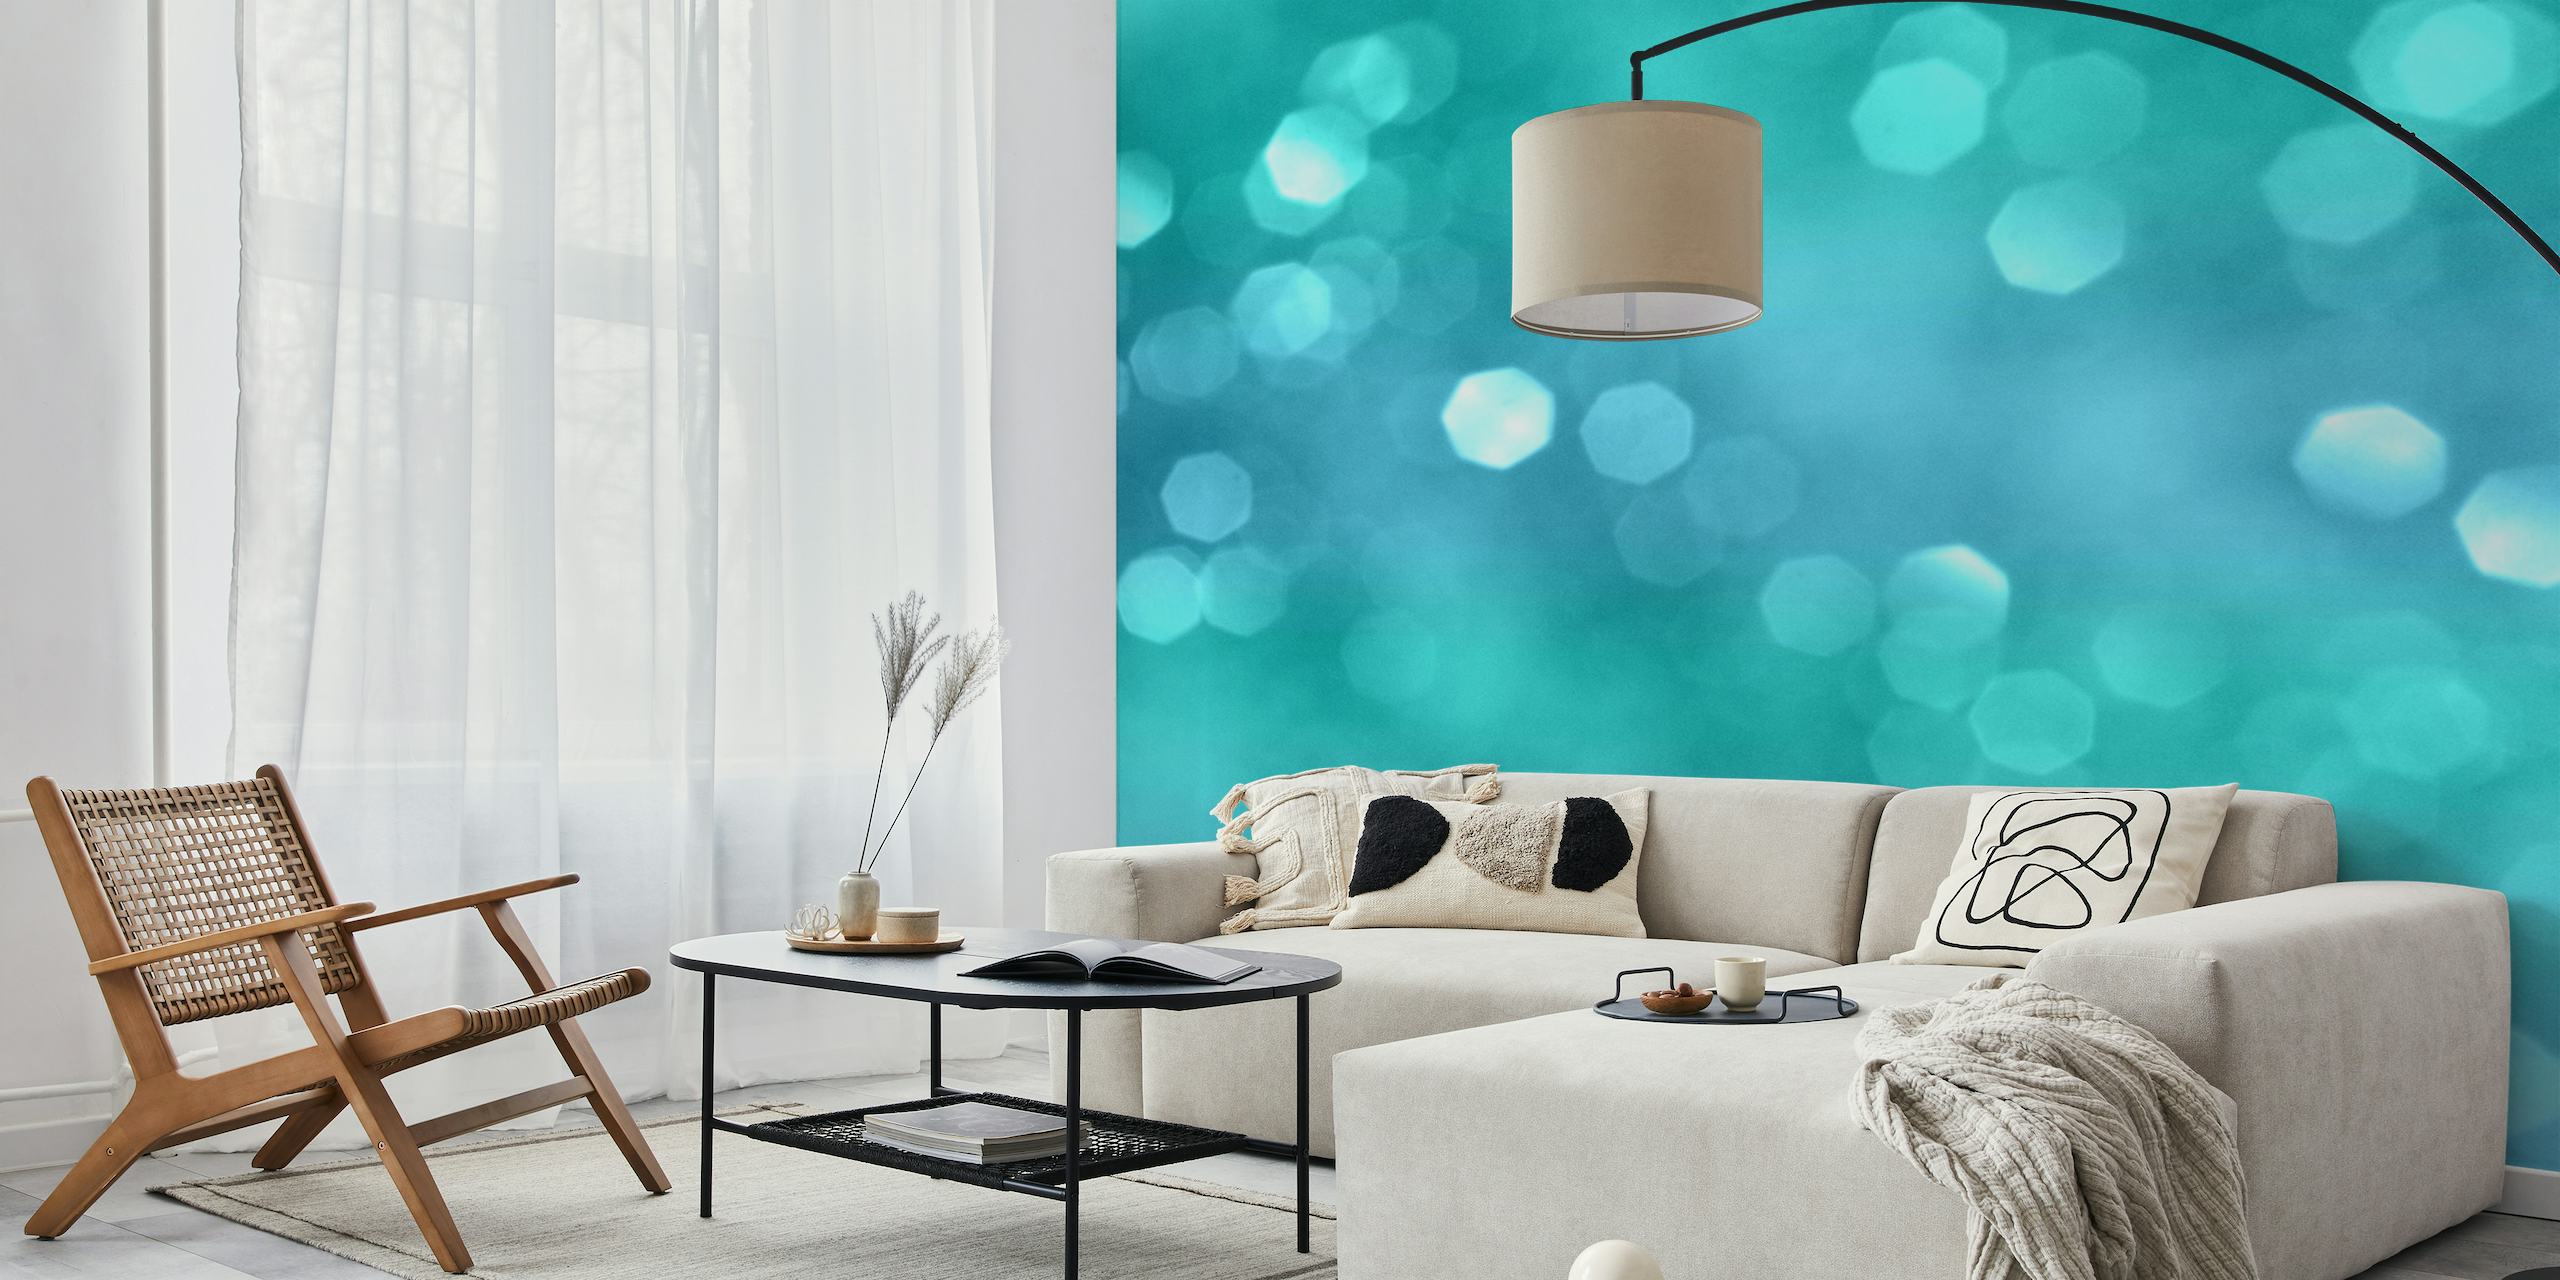 Fototapeta s modrým a tyrkysovým bokeh světelným efektem pro klidnou domácí výzdobu